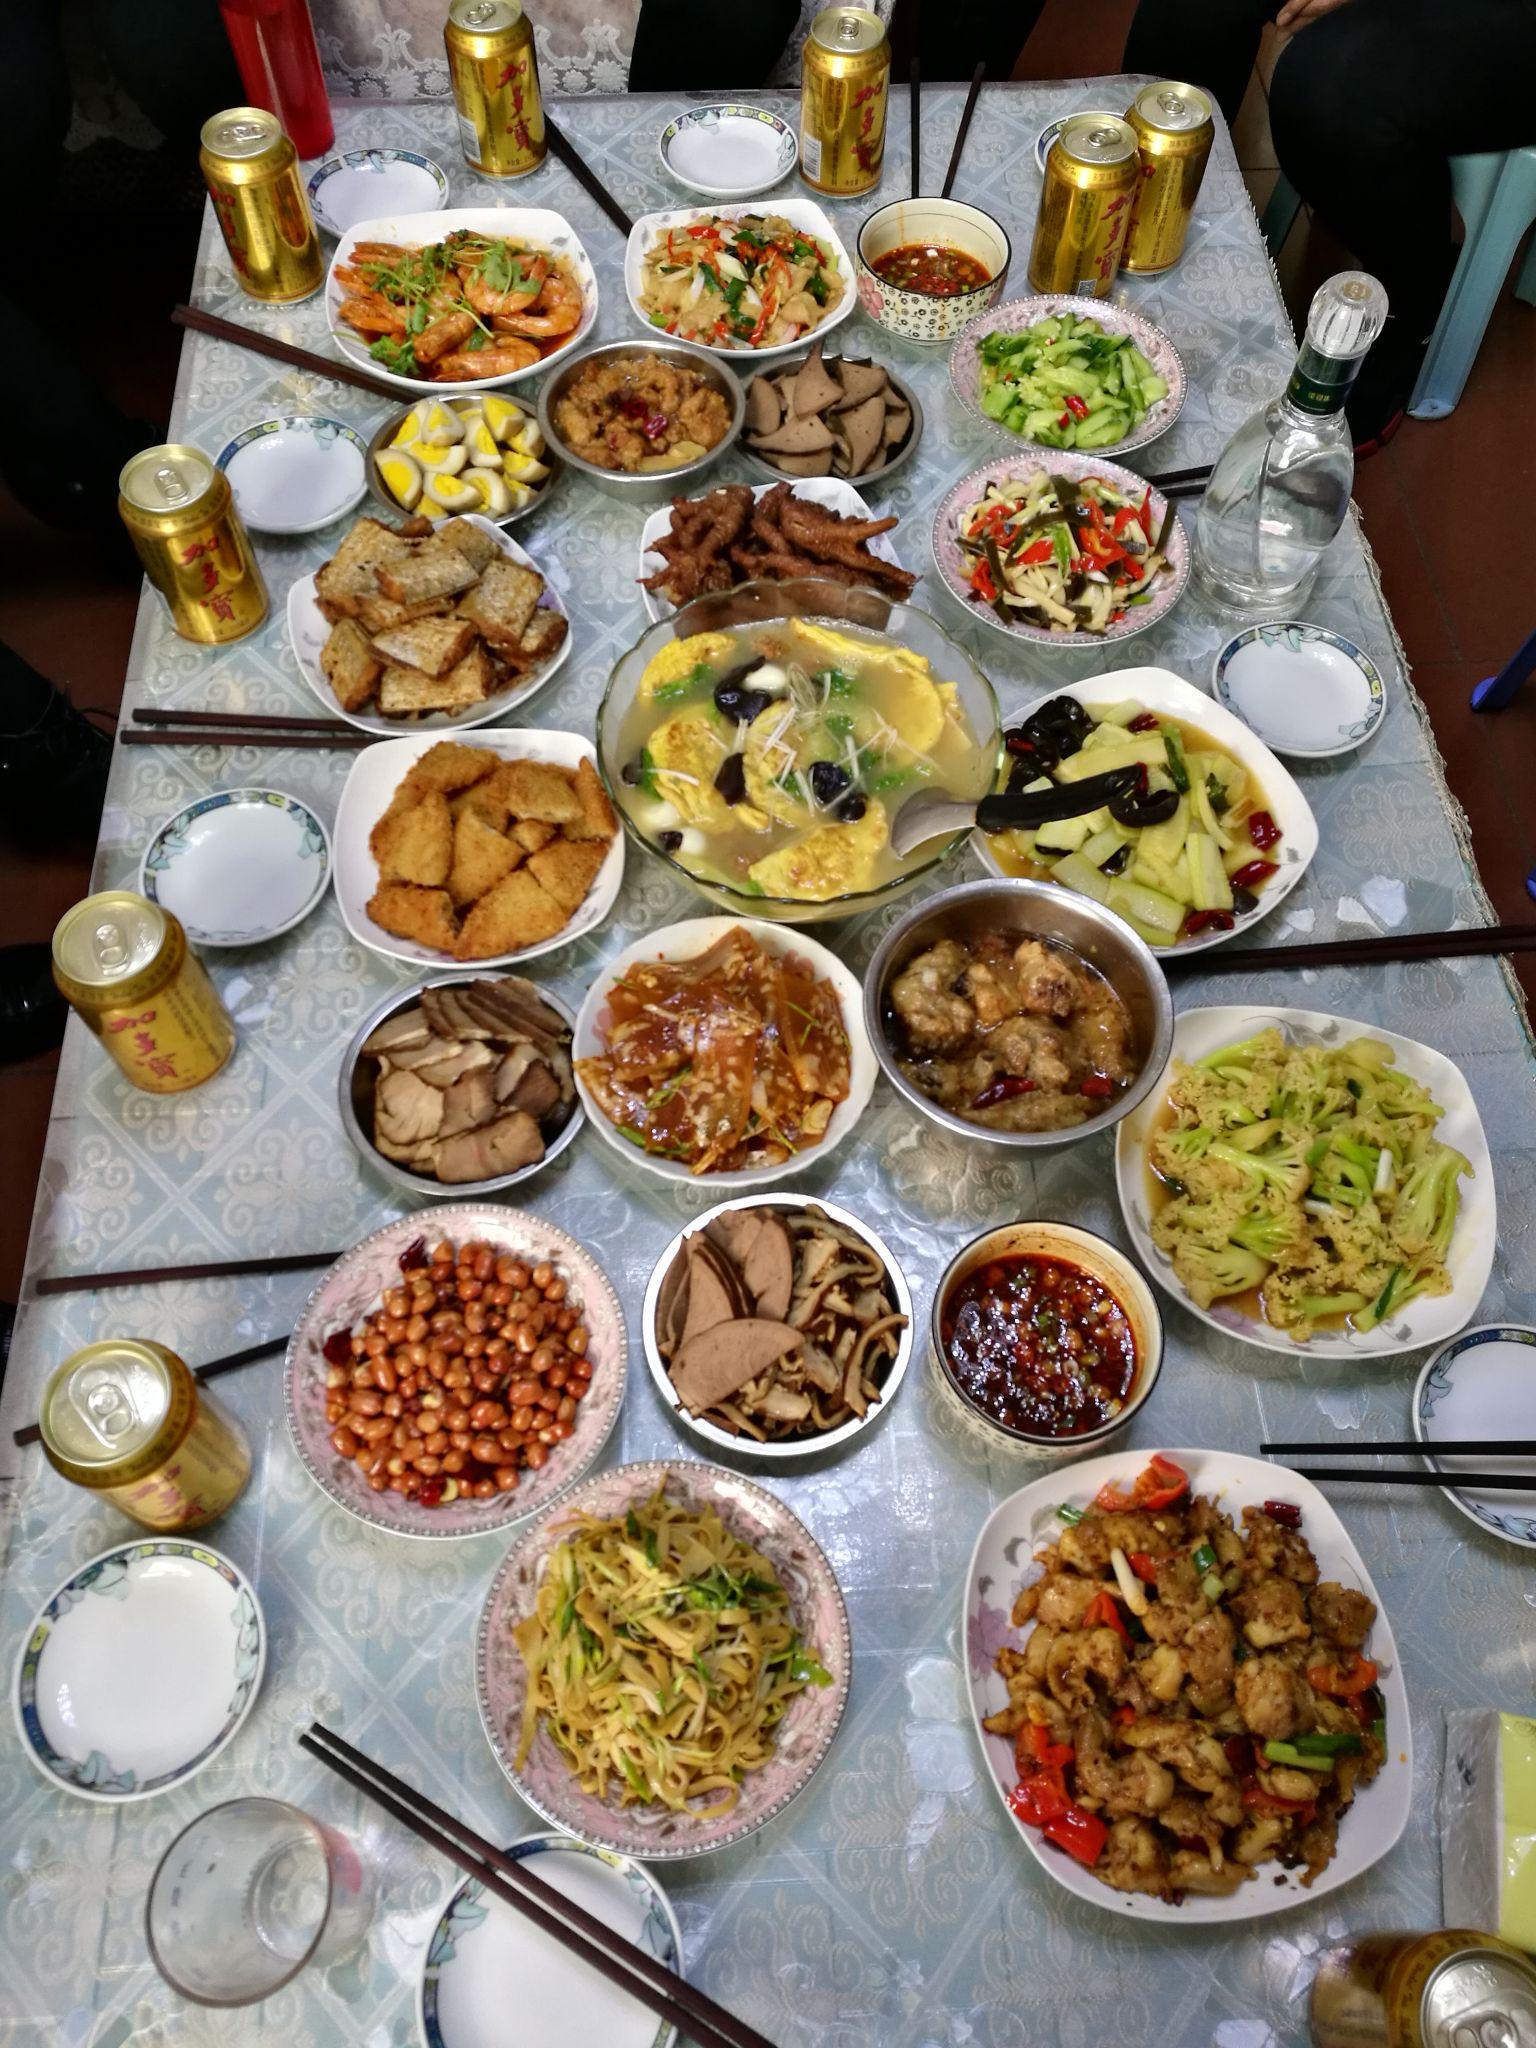 2021 年春节,你在西安的年夜饭是什么样?